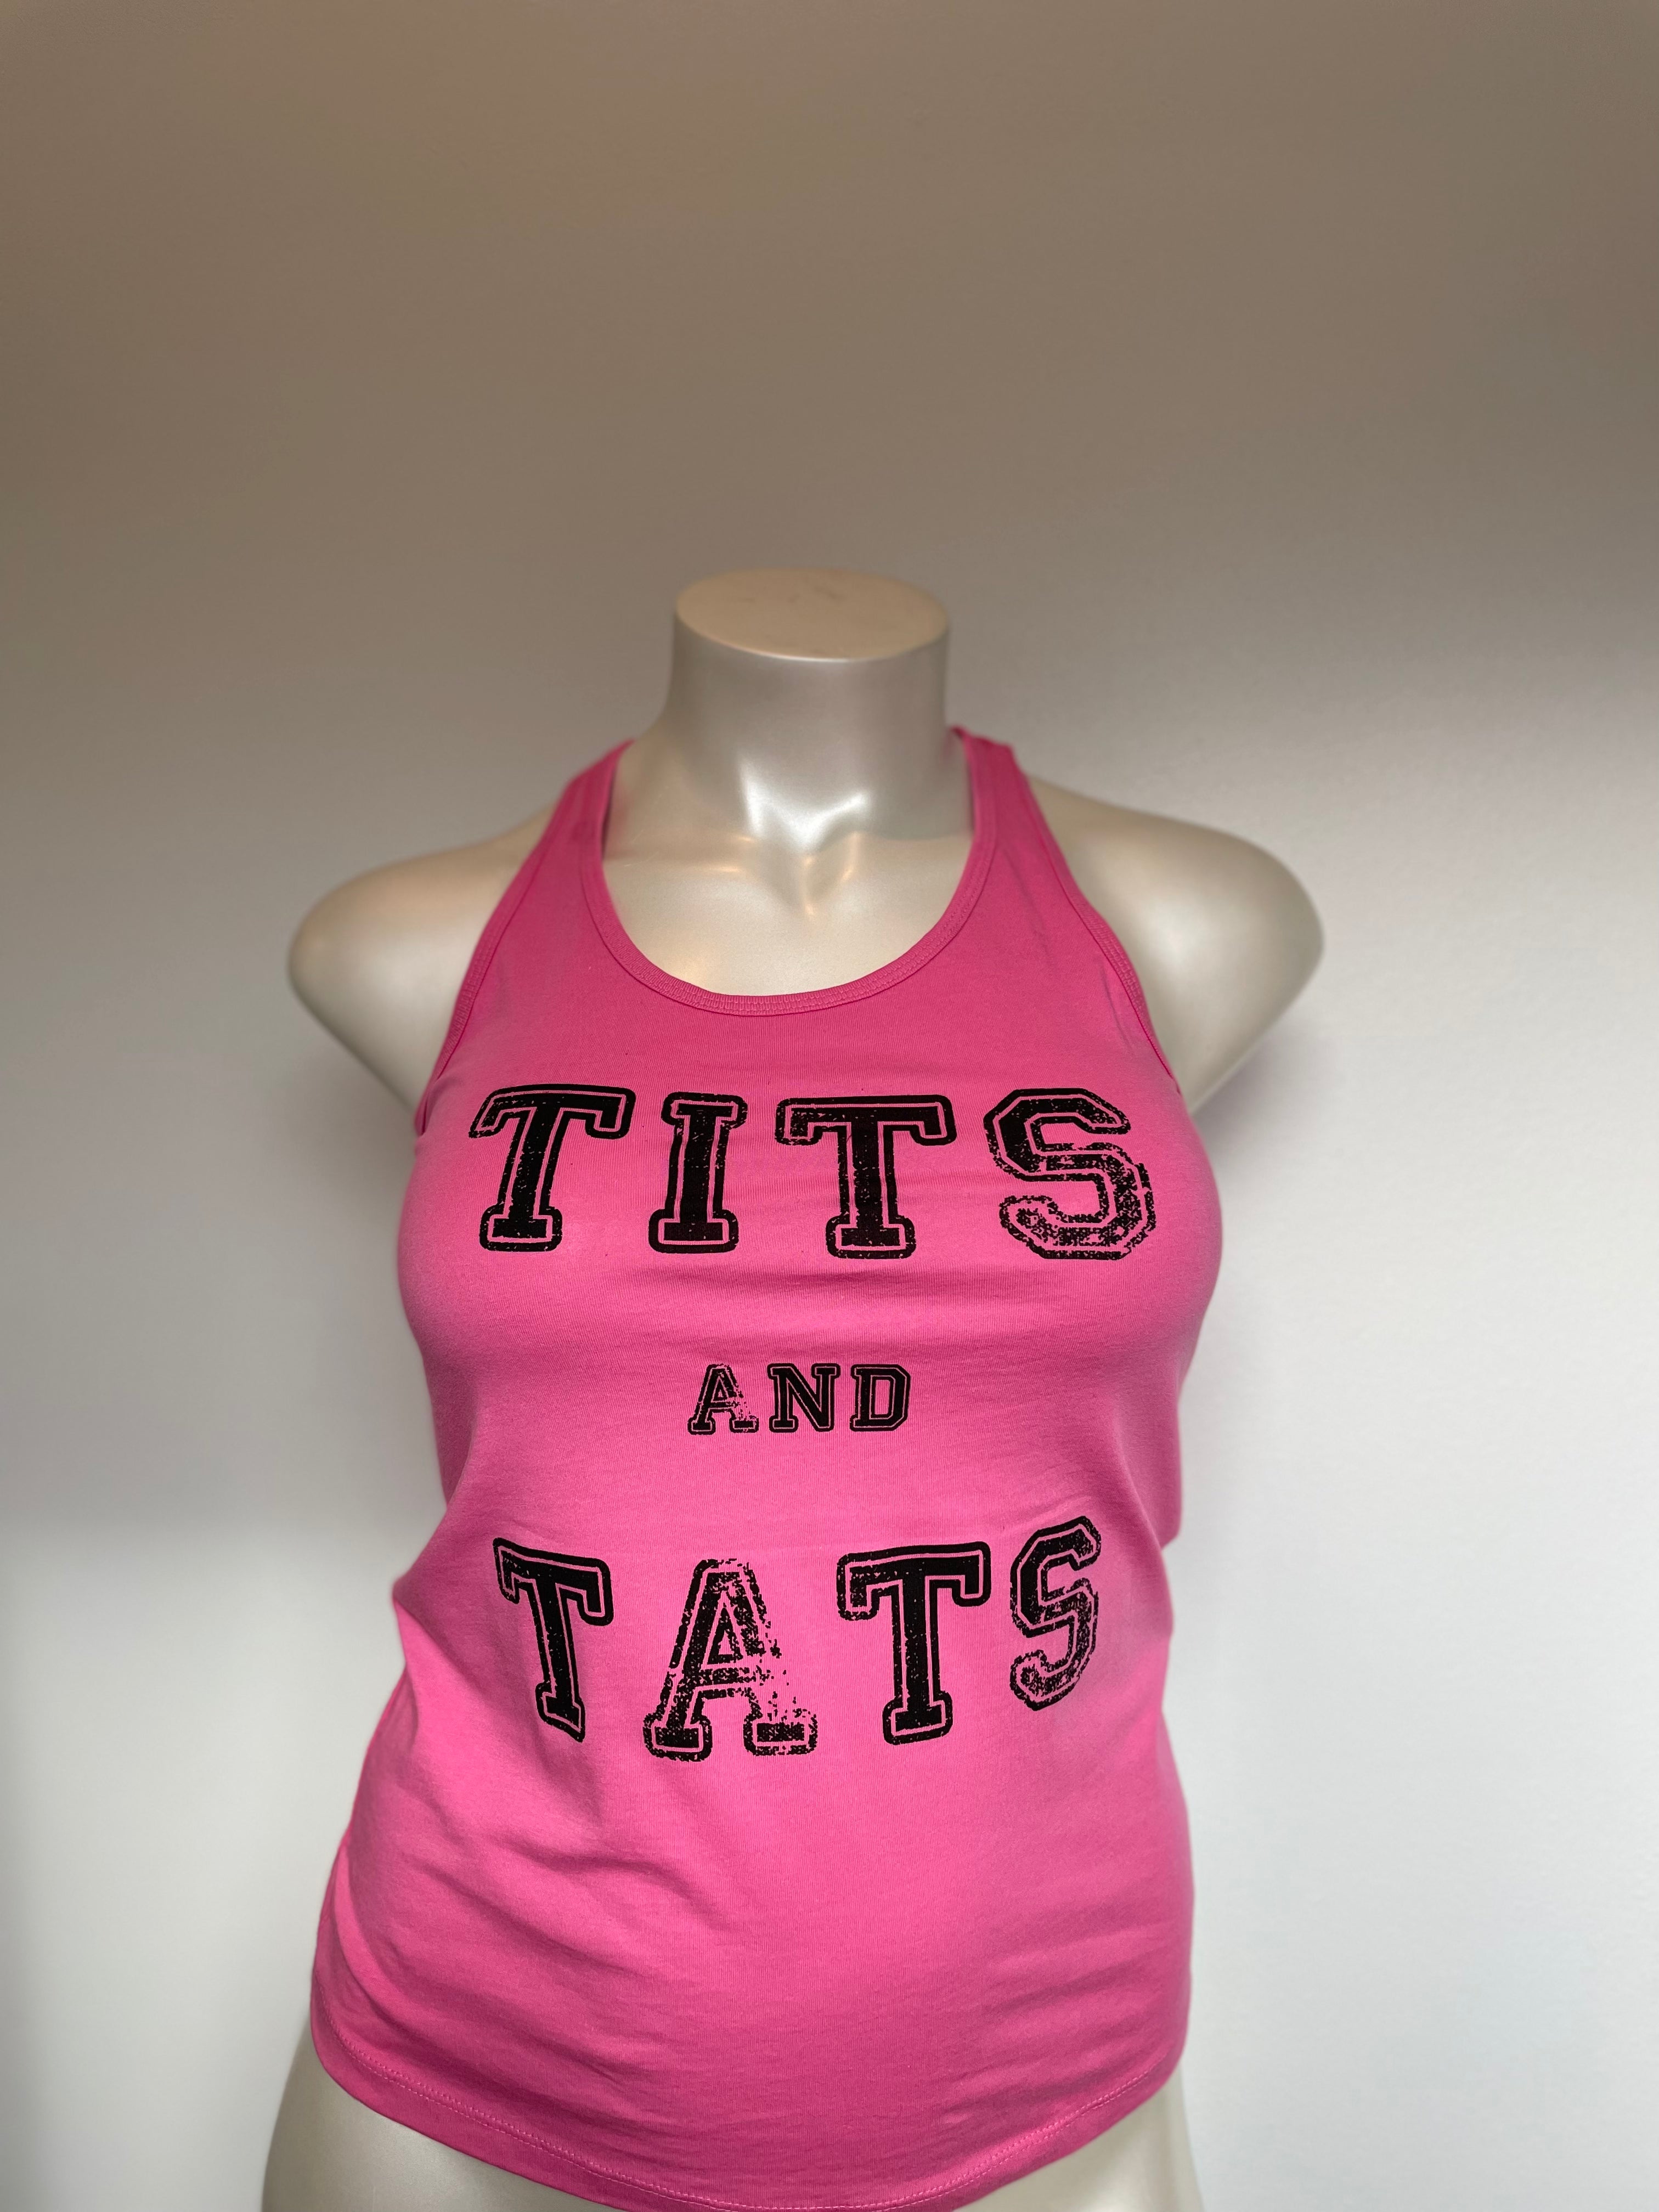 Tits and Tats